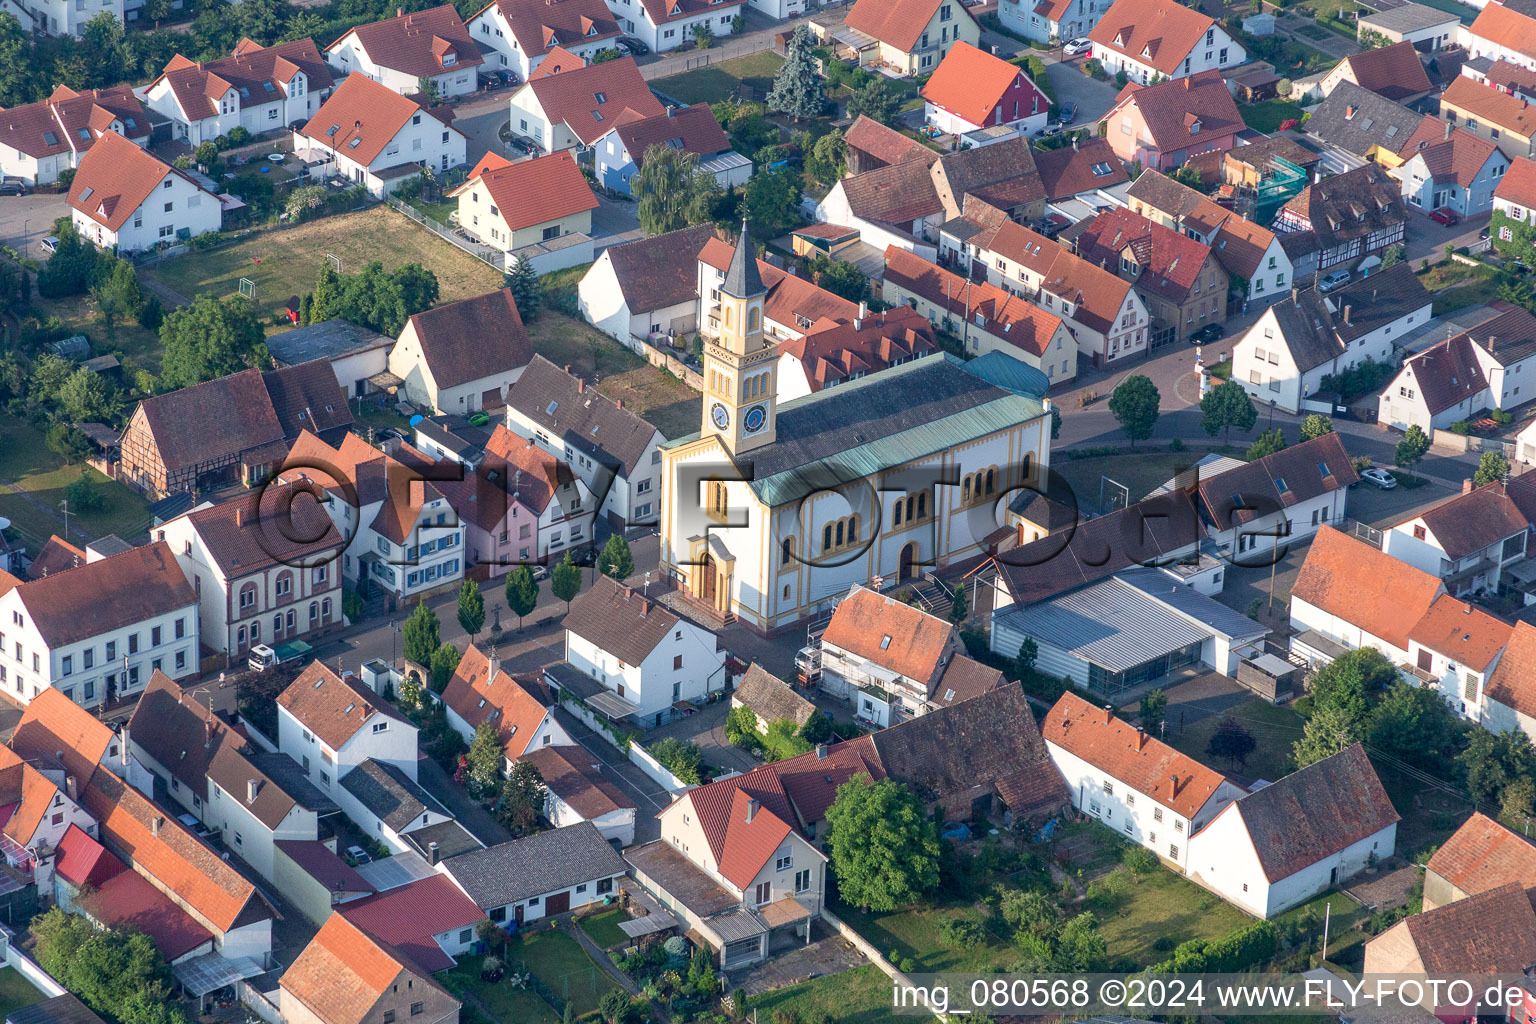 Vue aérienne de Bâtiment d'église au centre du village à Lingenfeld dans le département Rhénanie-Palatinat, Allemagne